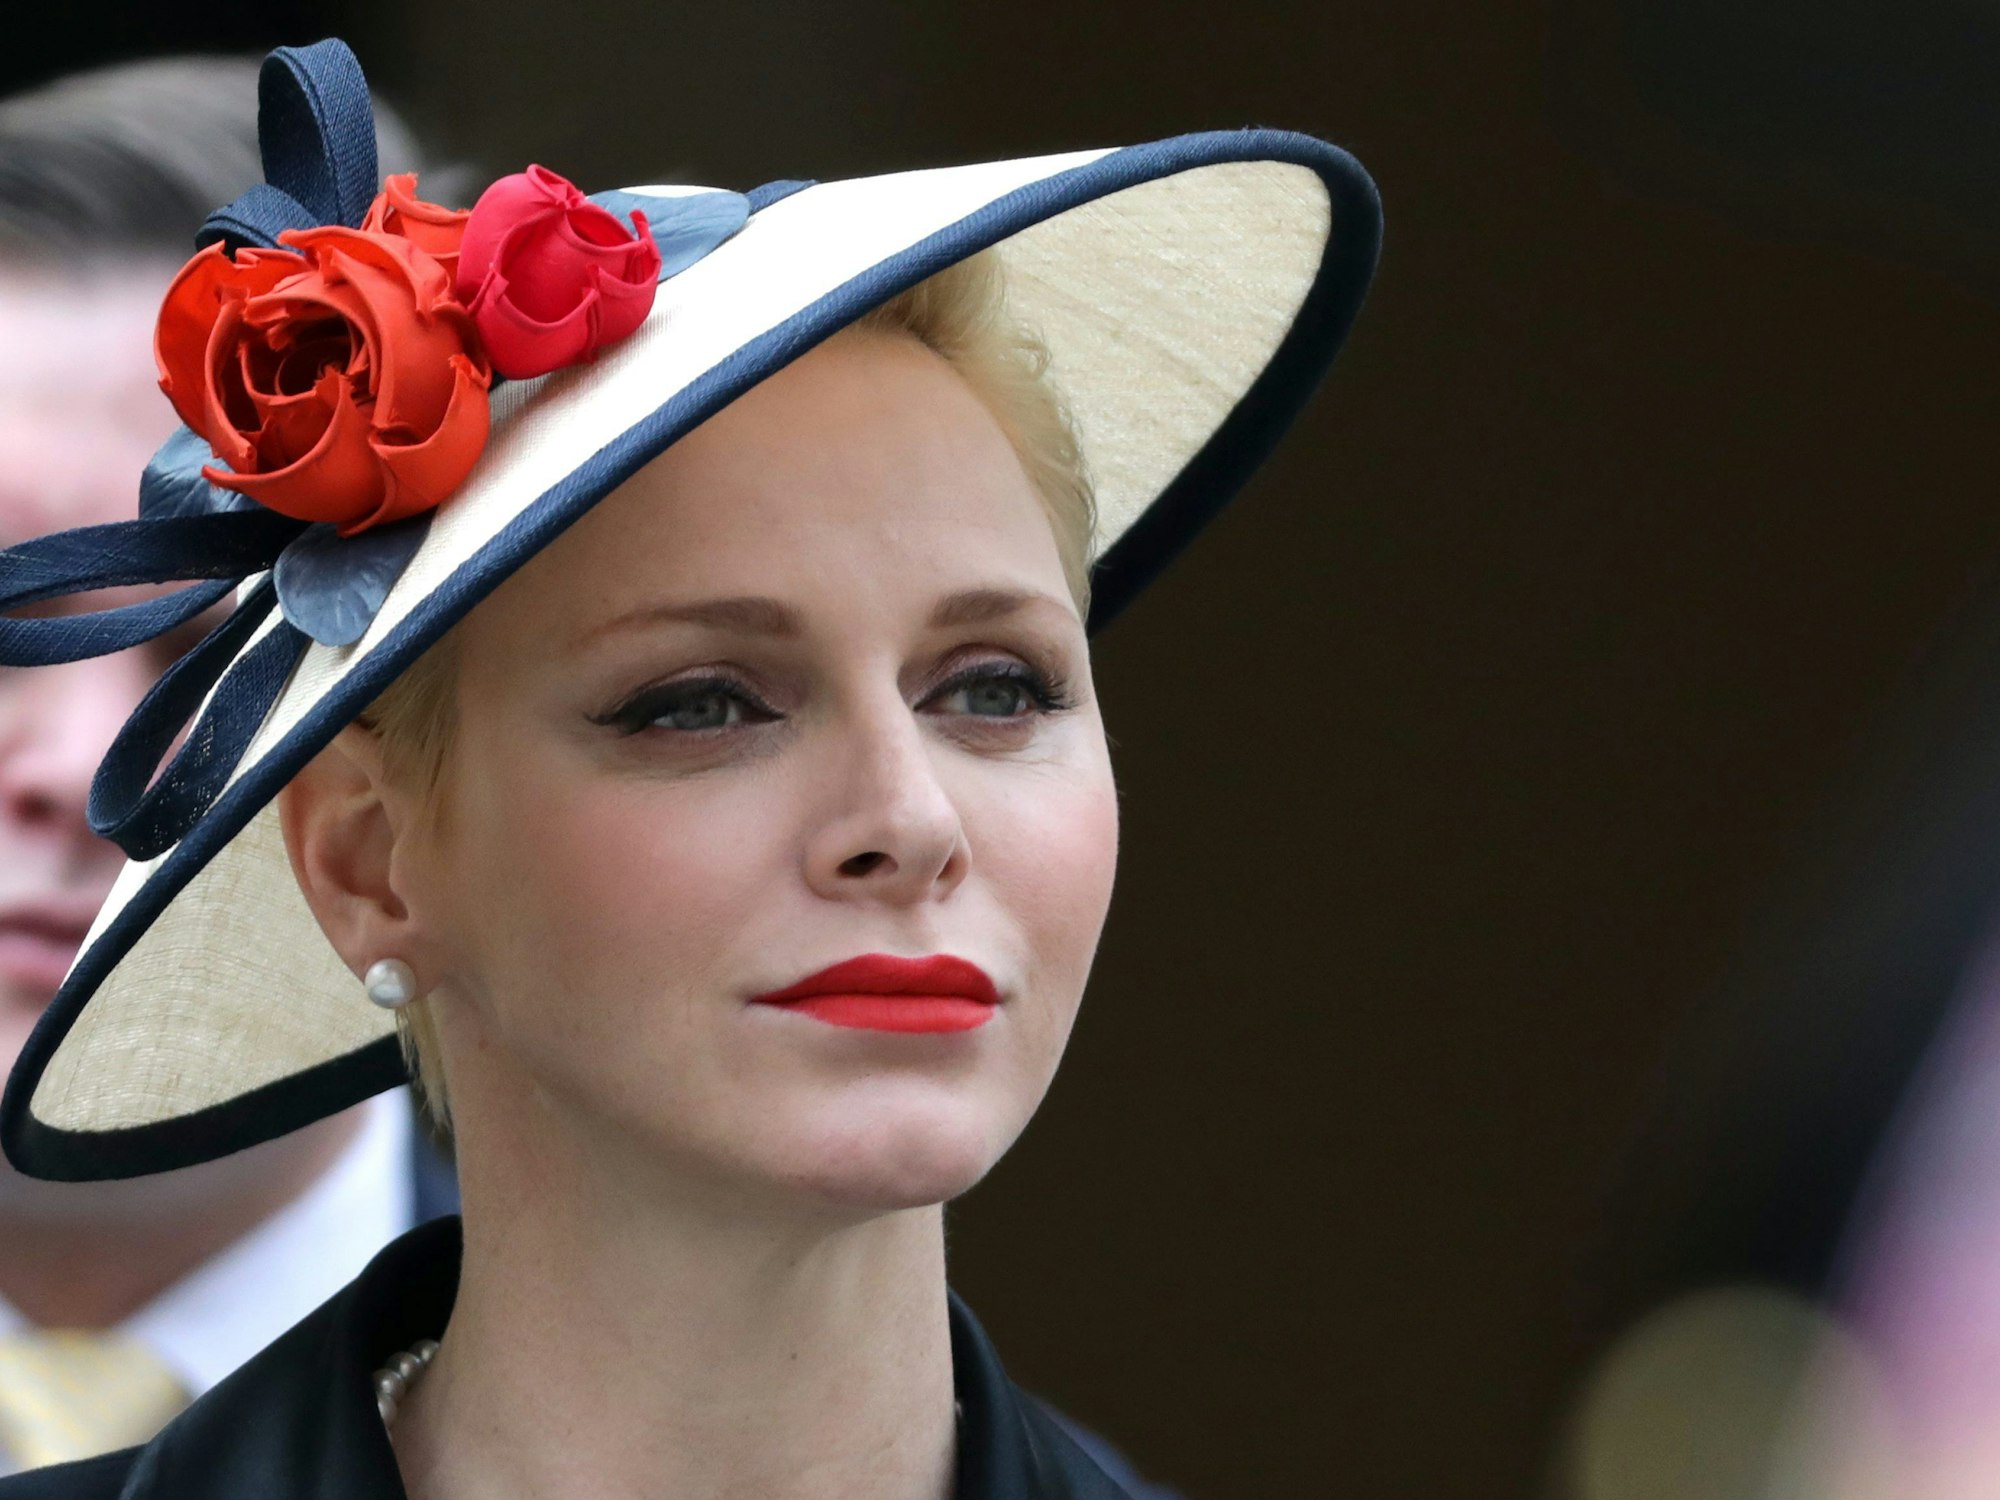 Charlène von Monaco präsentiert am Nationalfeiertag die Landesfarben rot und weiß in ihrem Hut.